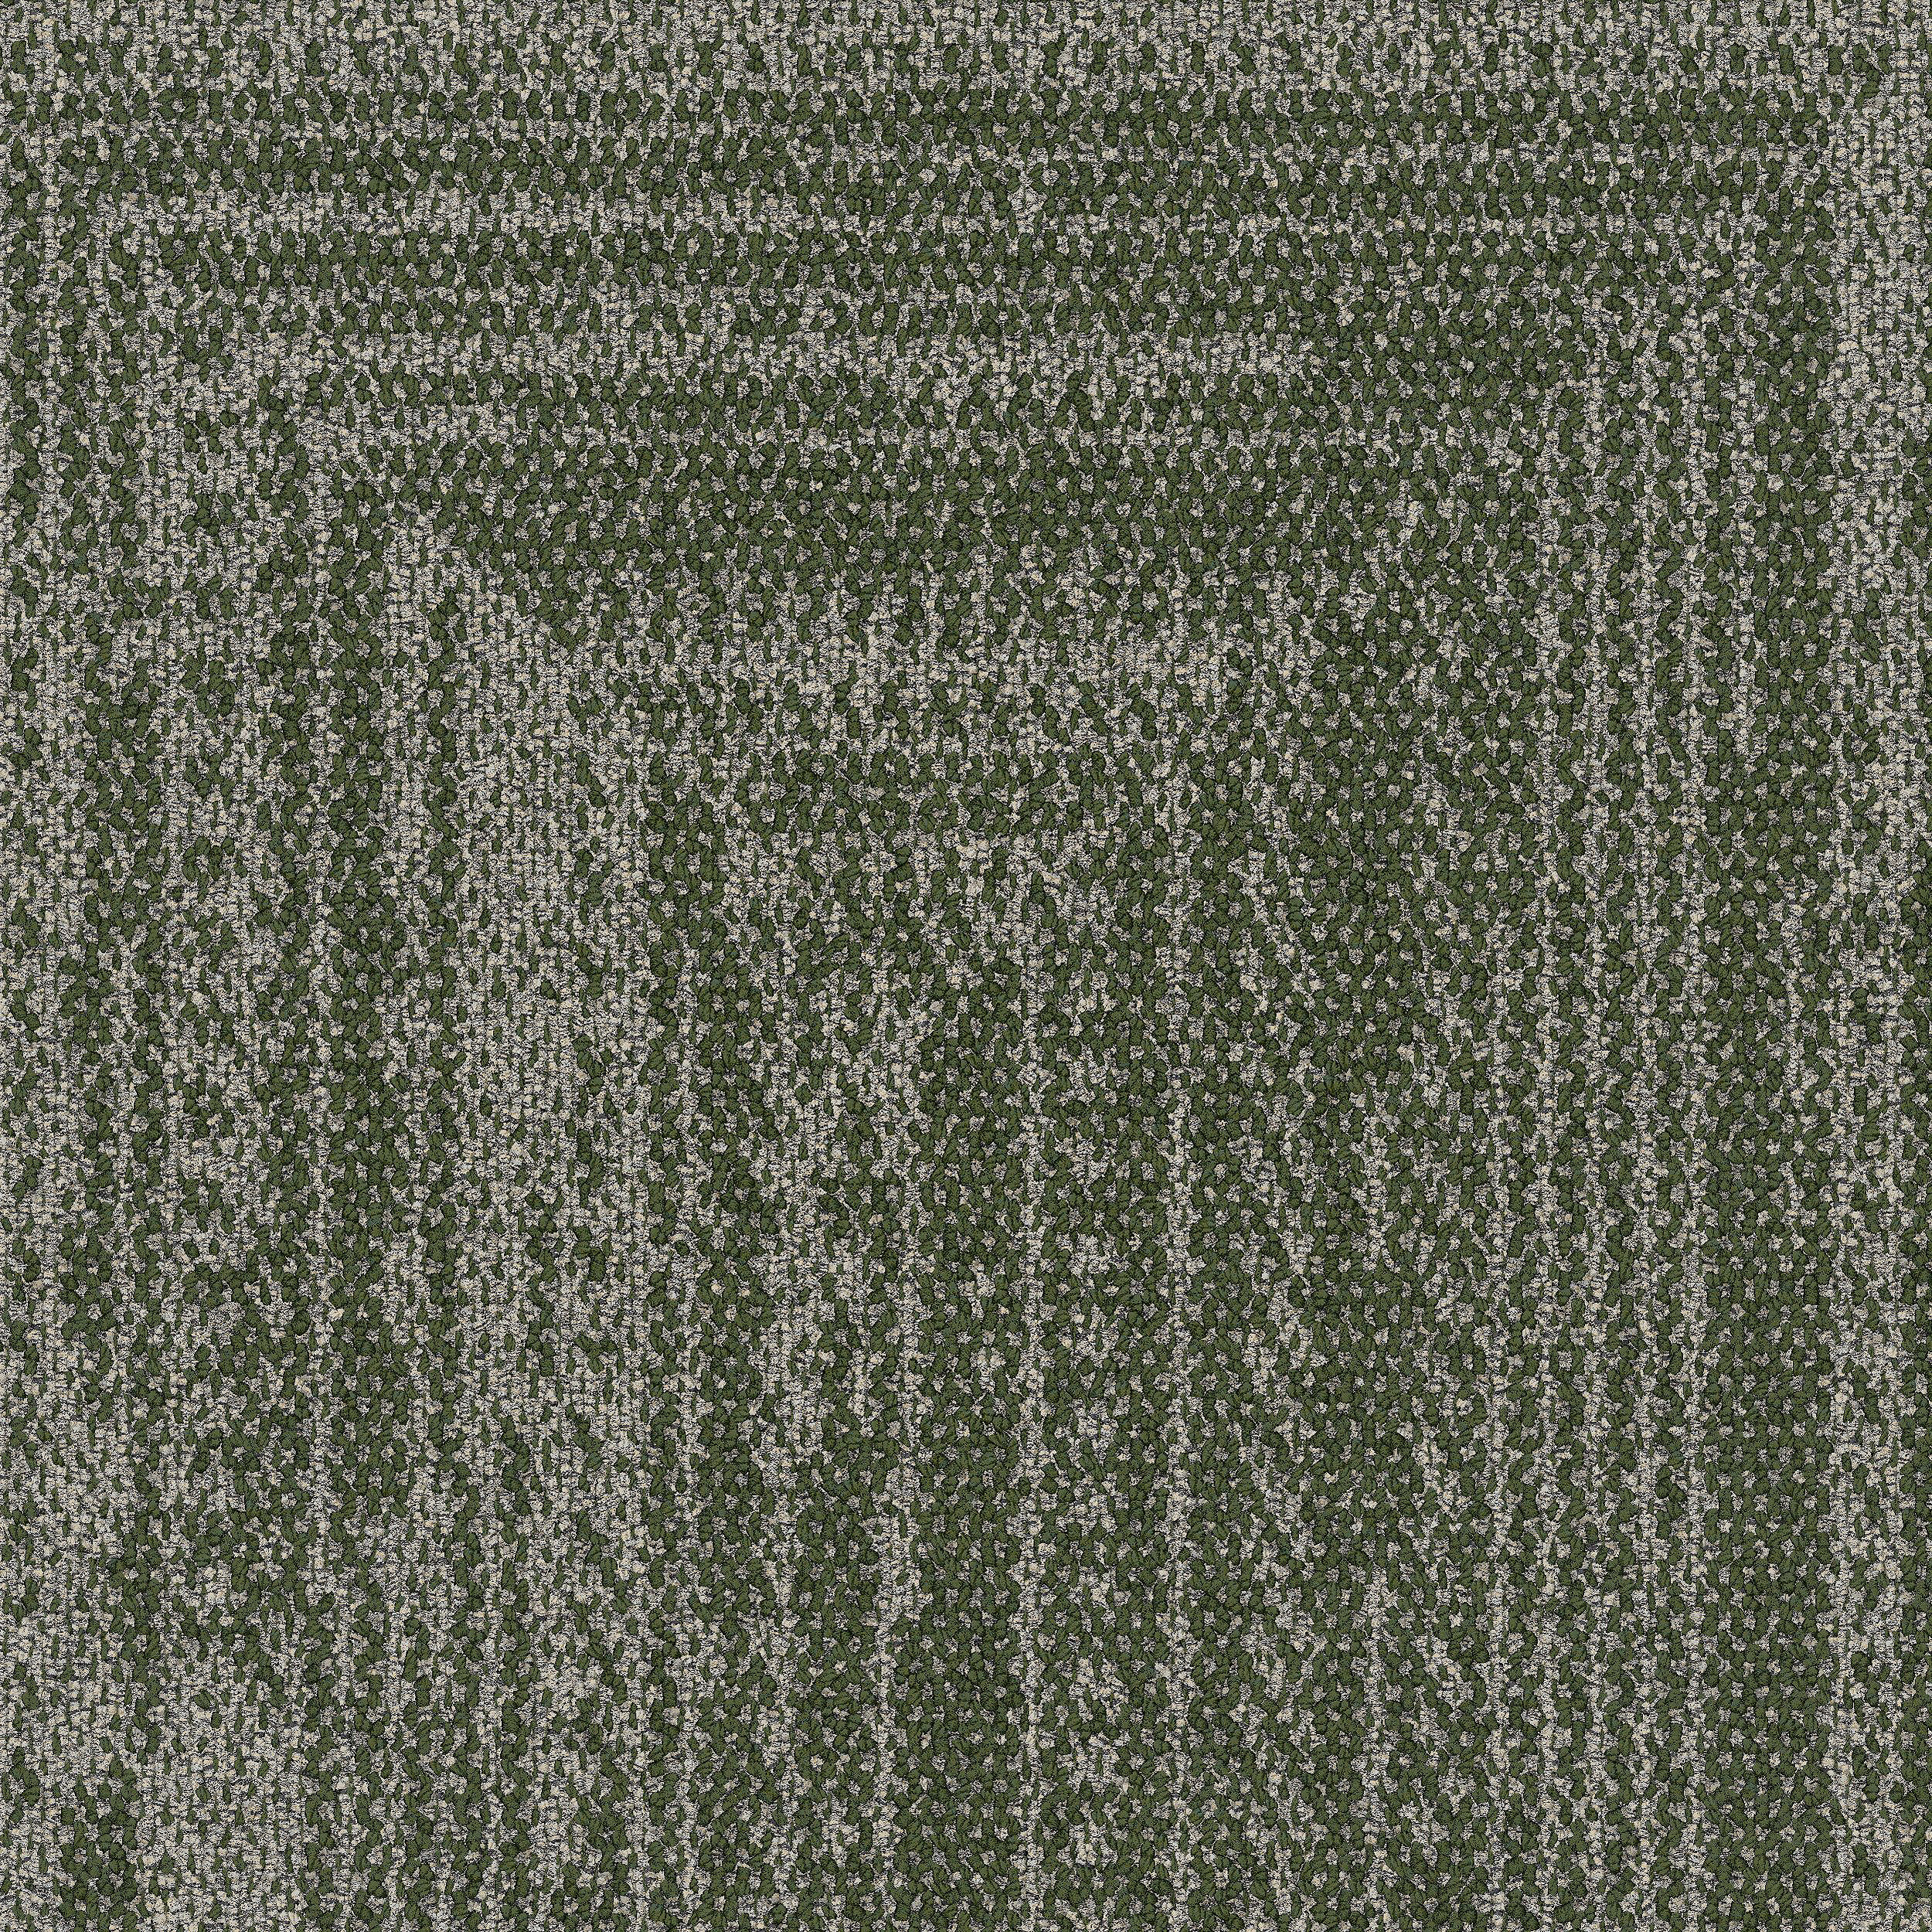 Open Air 403 Accent Carpet Tile In Moss afbeeldingnummer 7